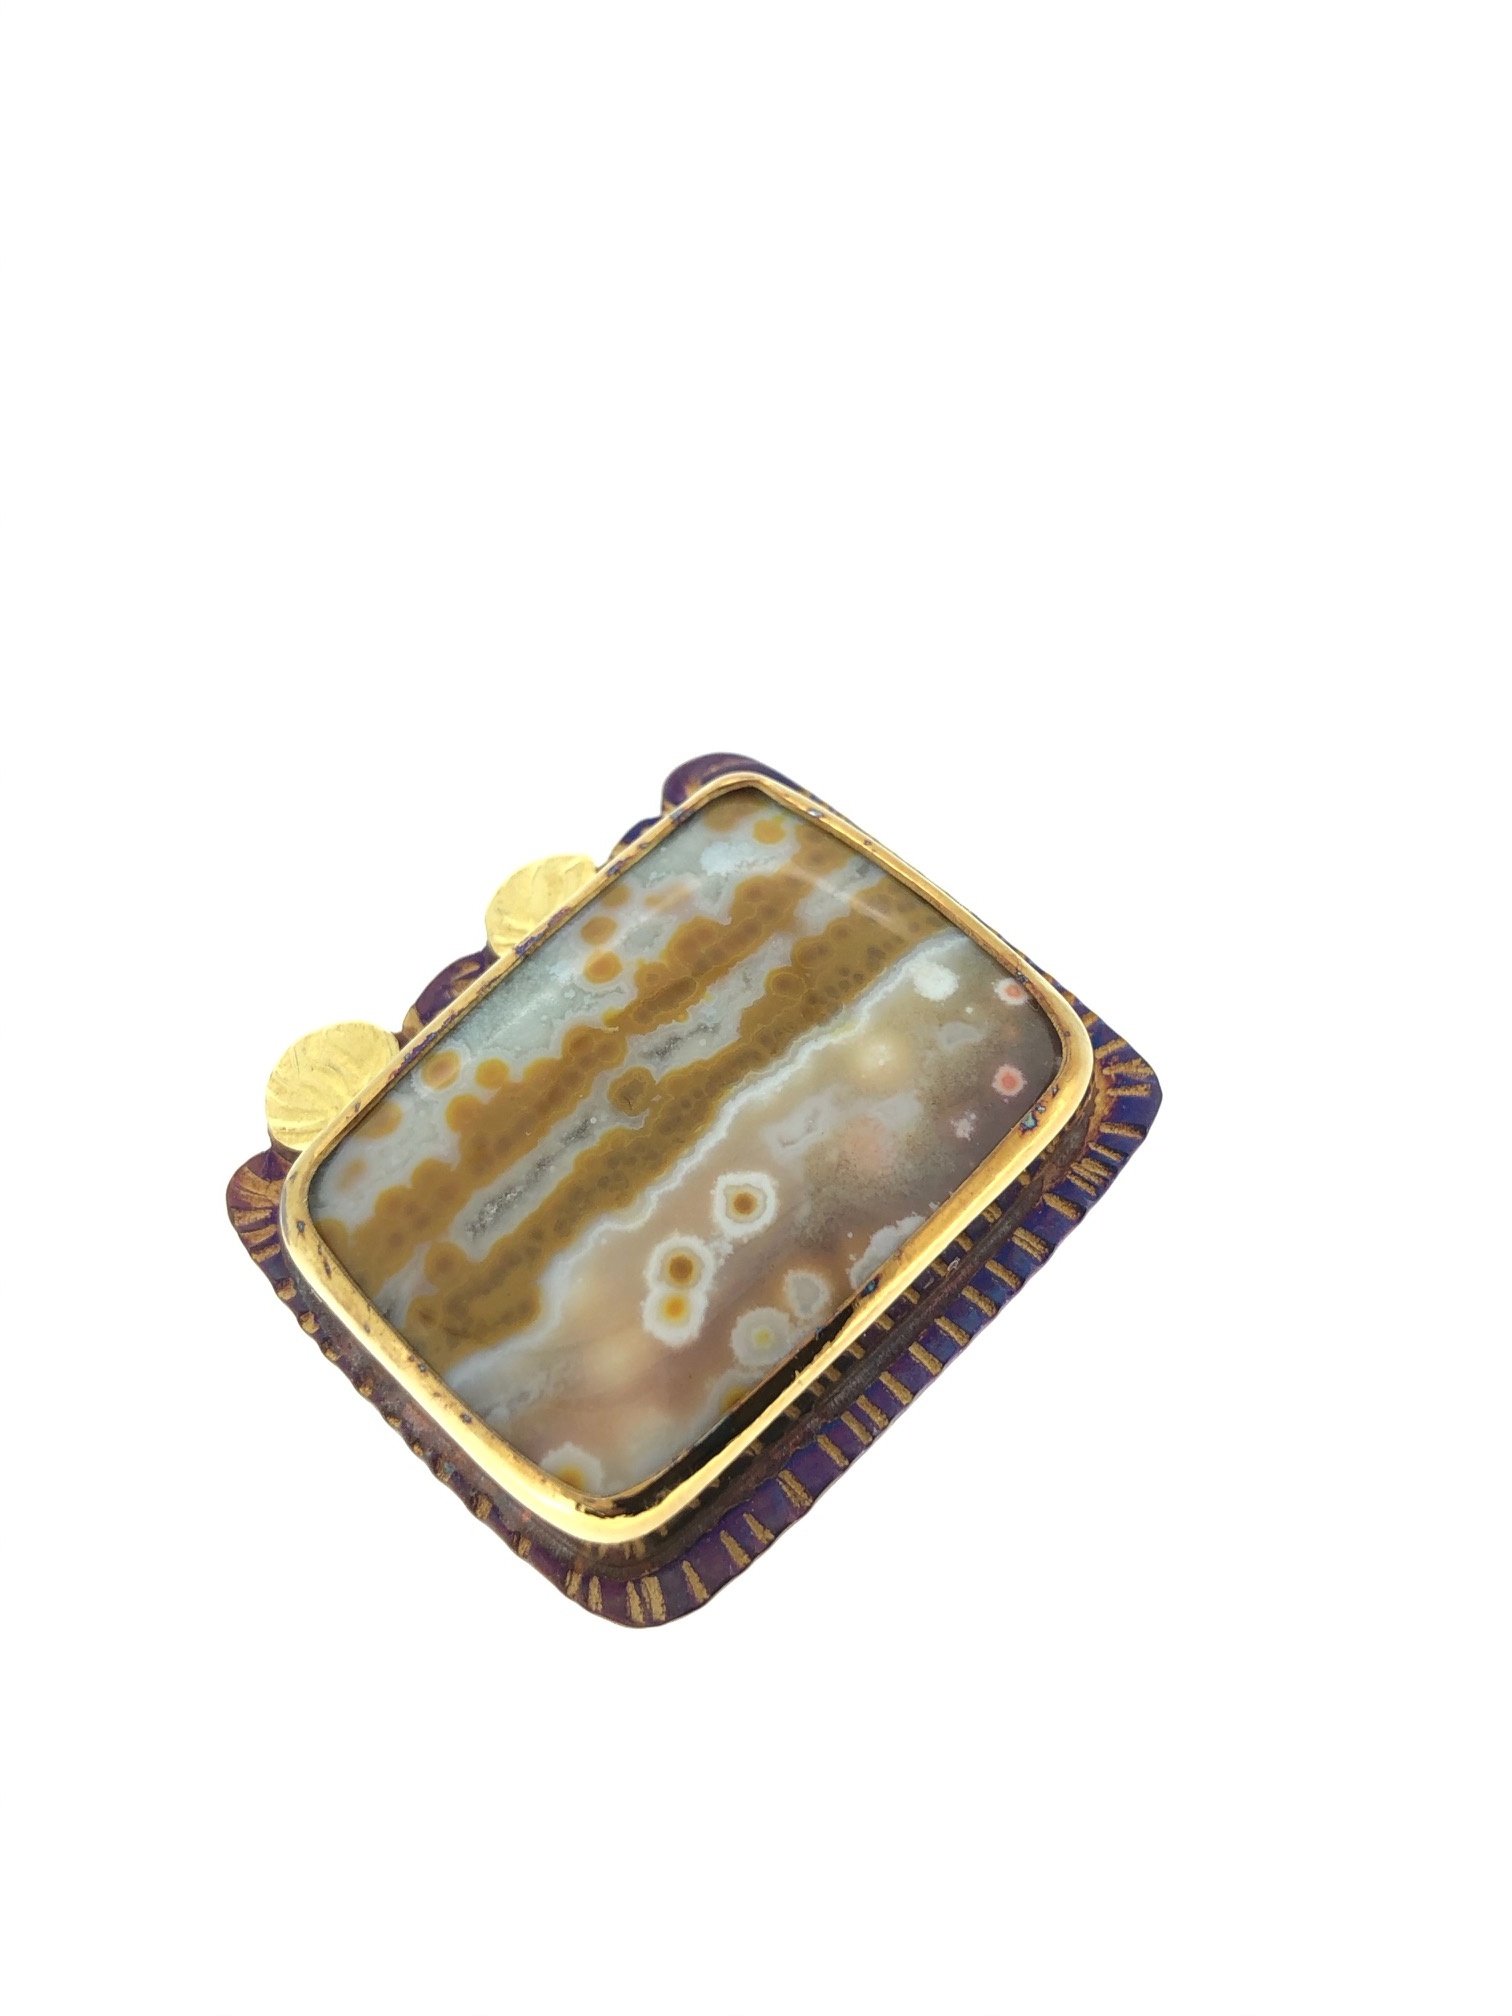 Orbicular Jasper Ring